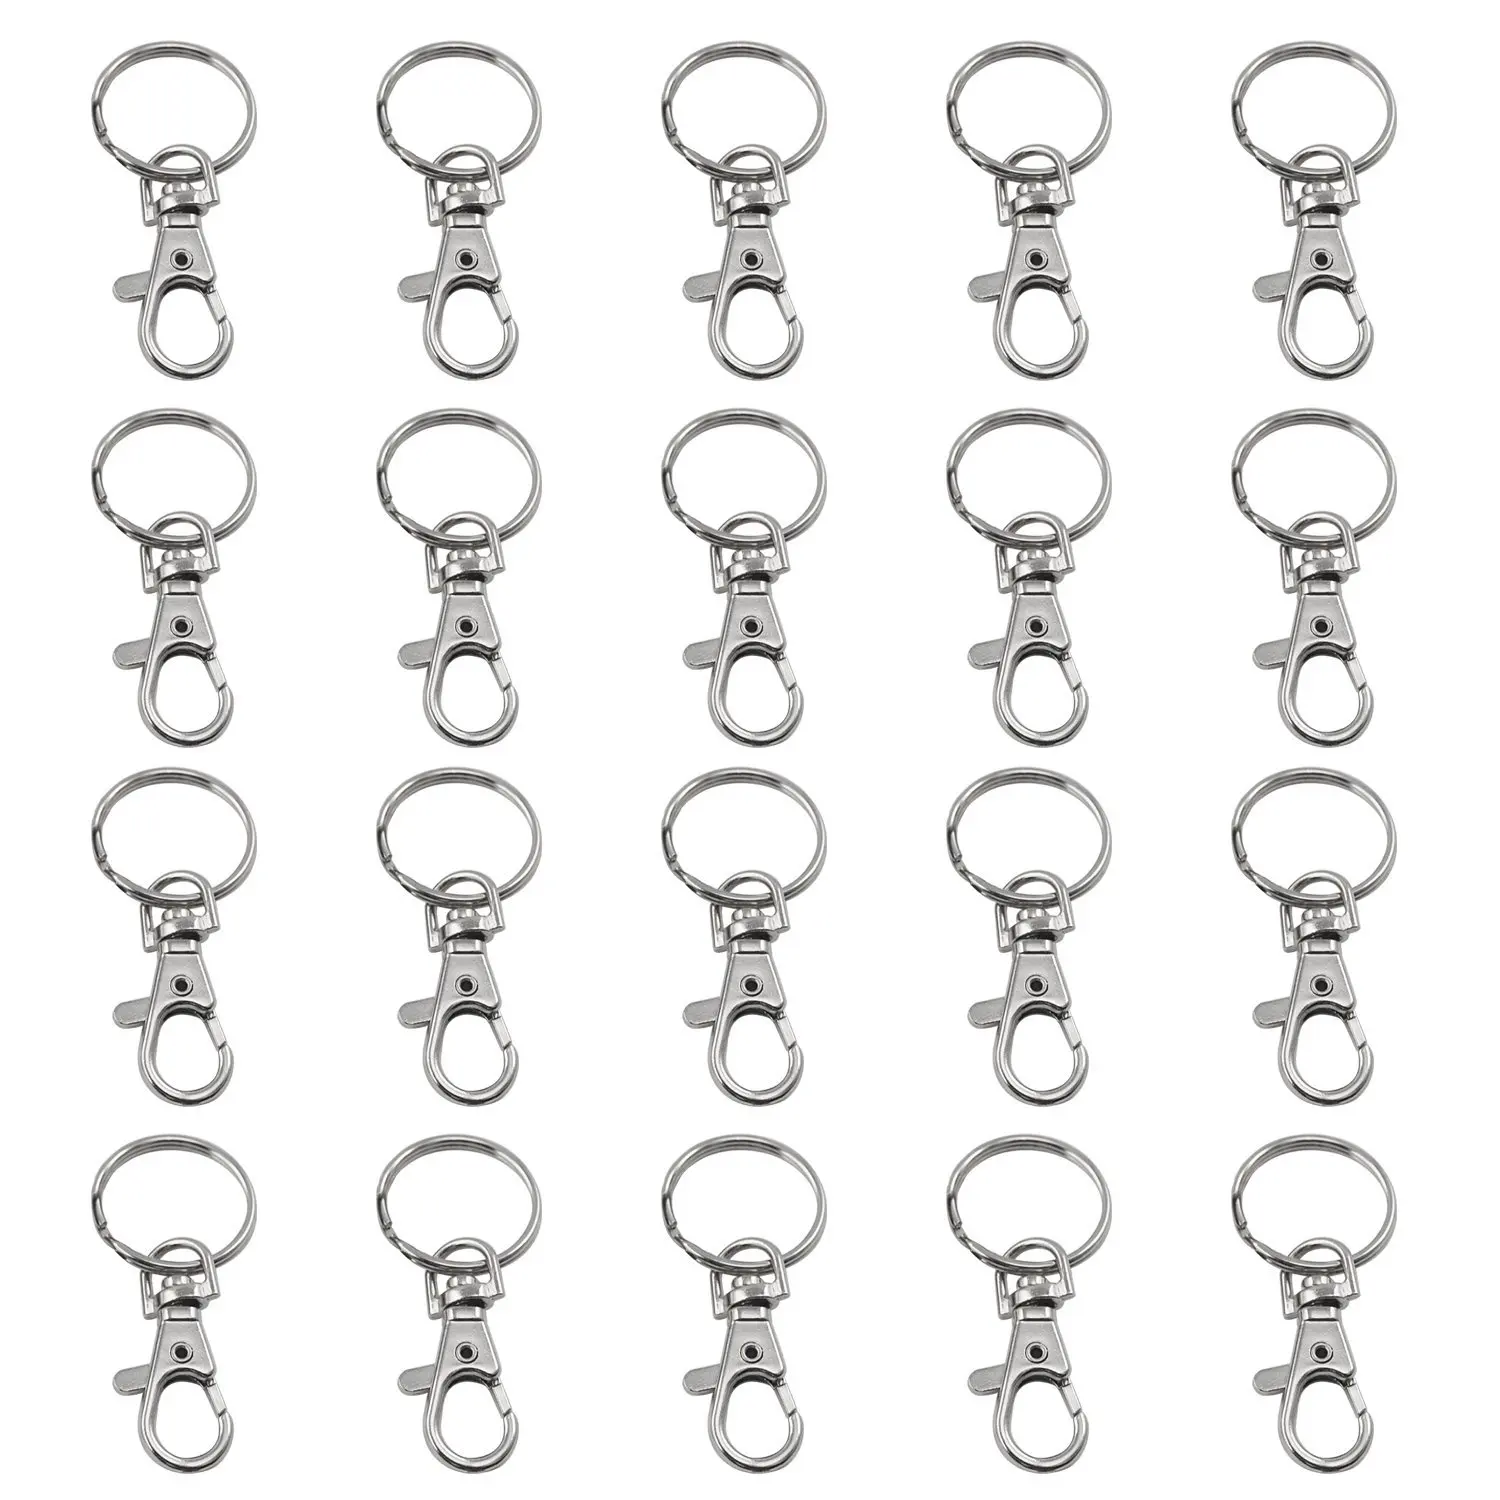 DSGS 20 небольшие съемные колпачки для ключей-Карабин брелок-косметика и ювелирные изделия